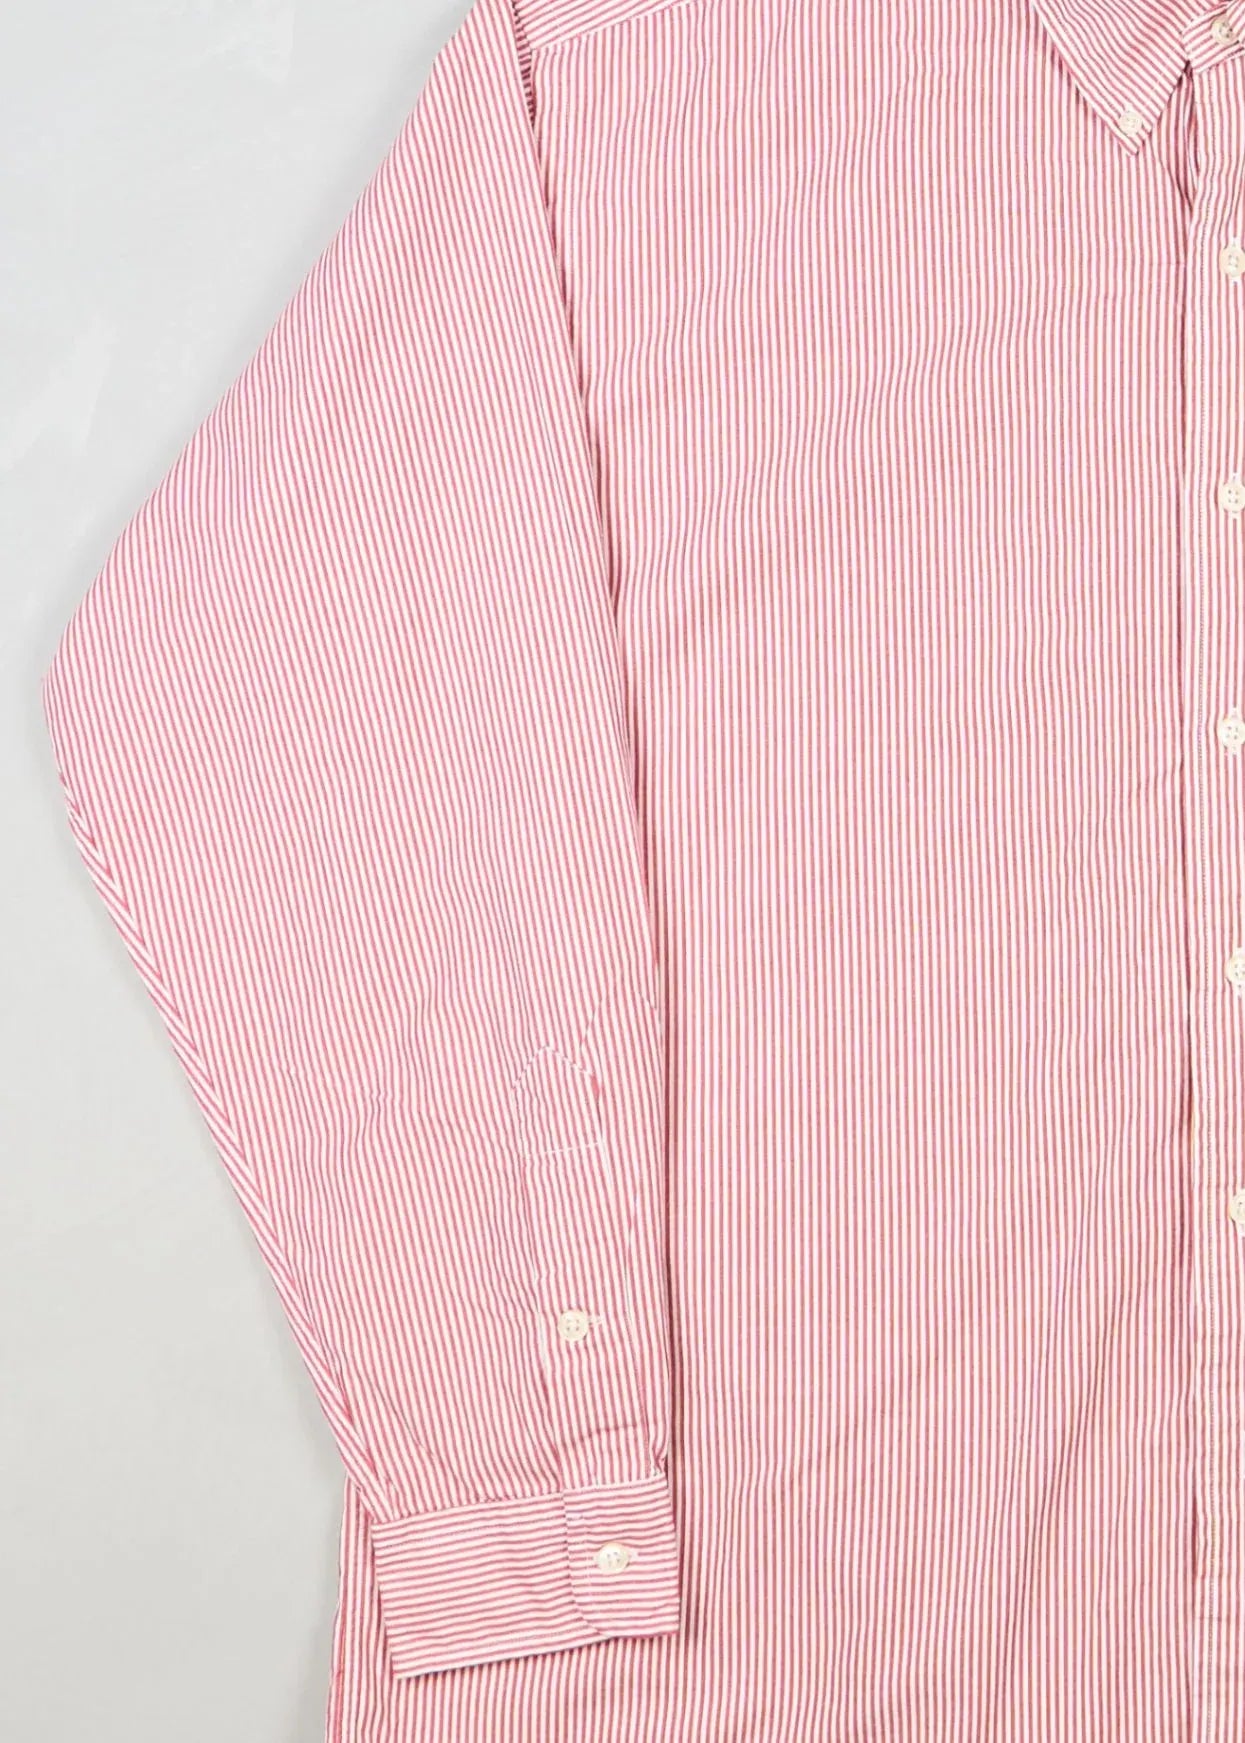 Ralph Lauren - Shirt (L) Left